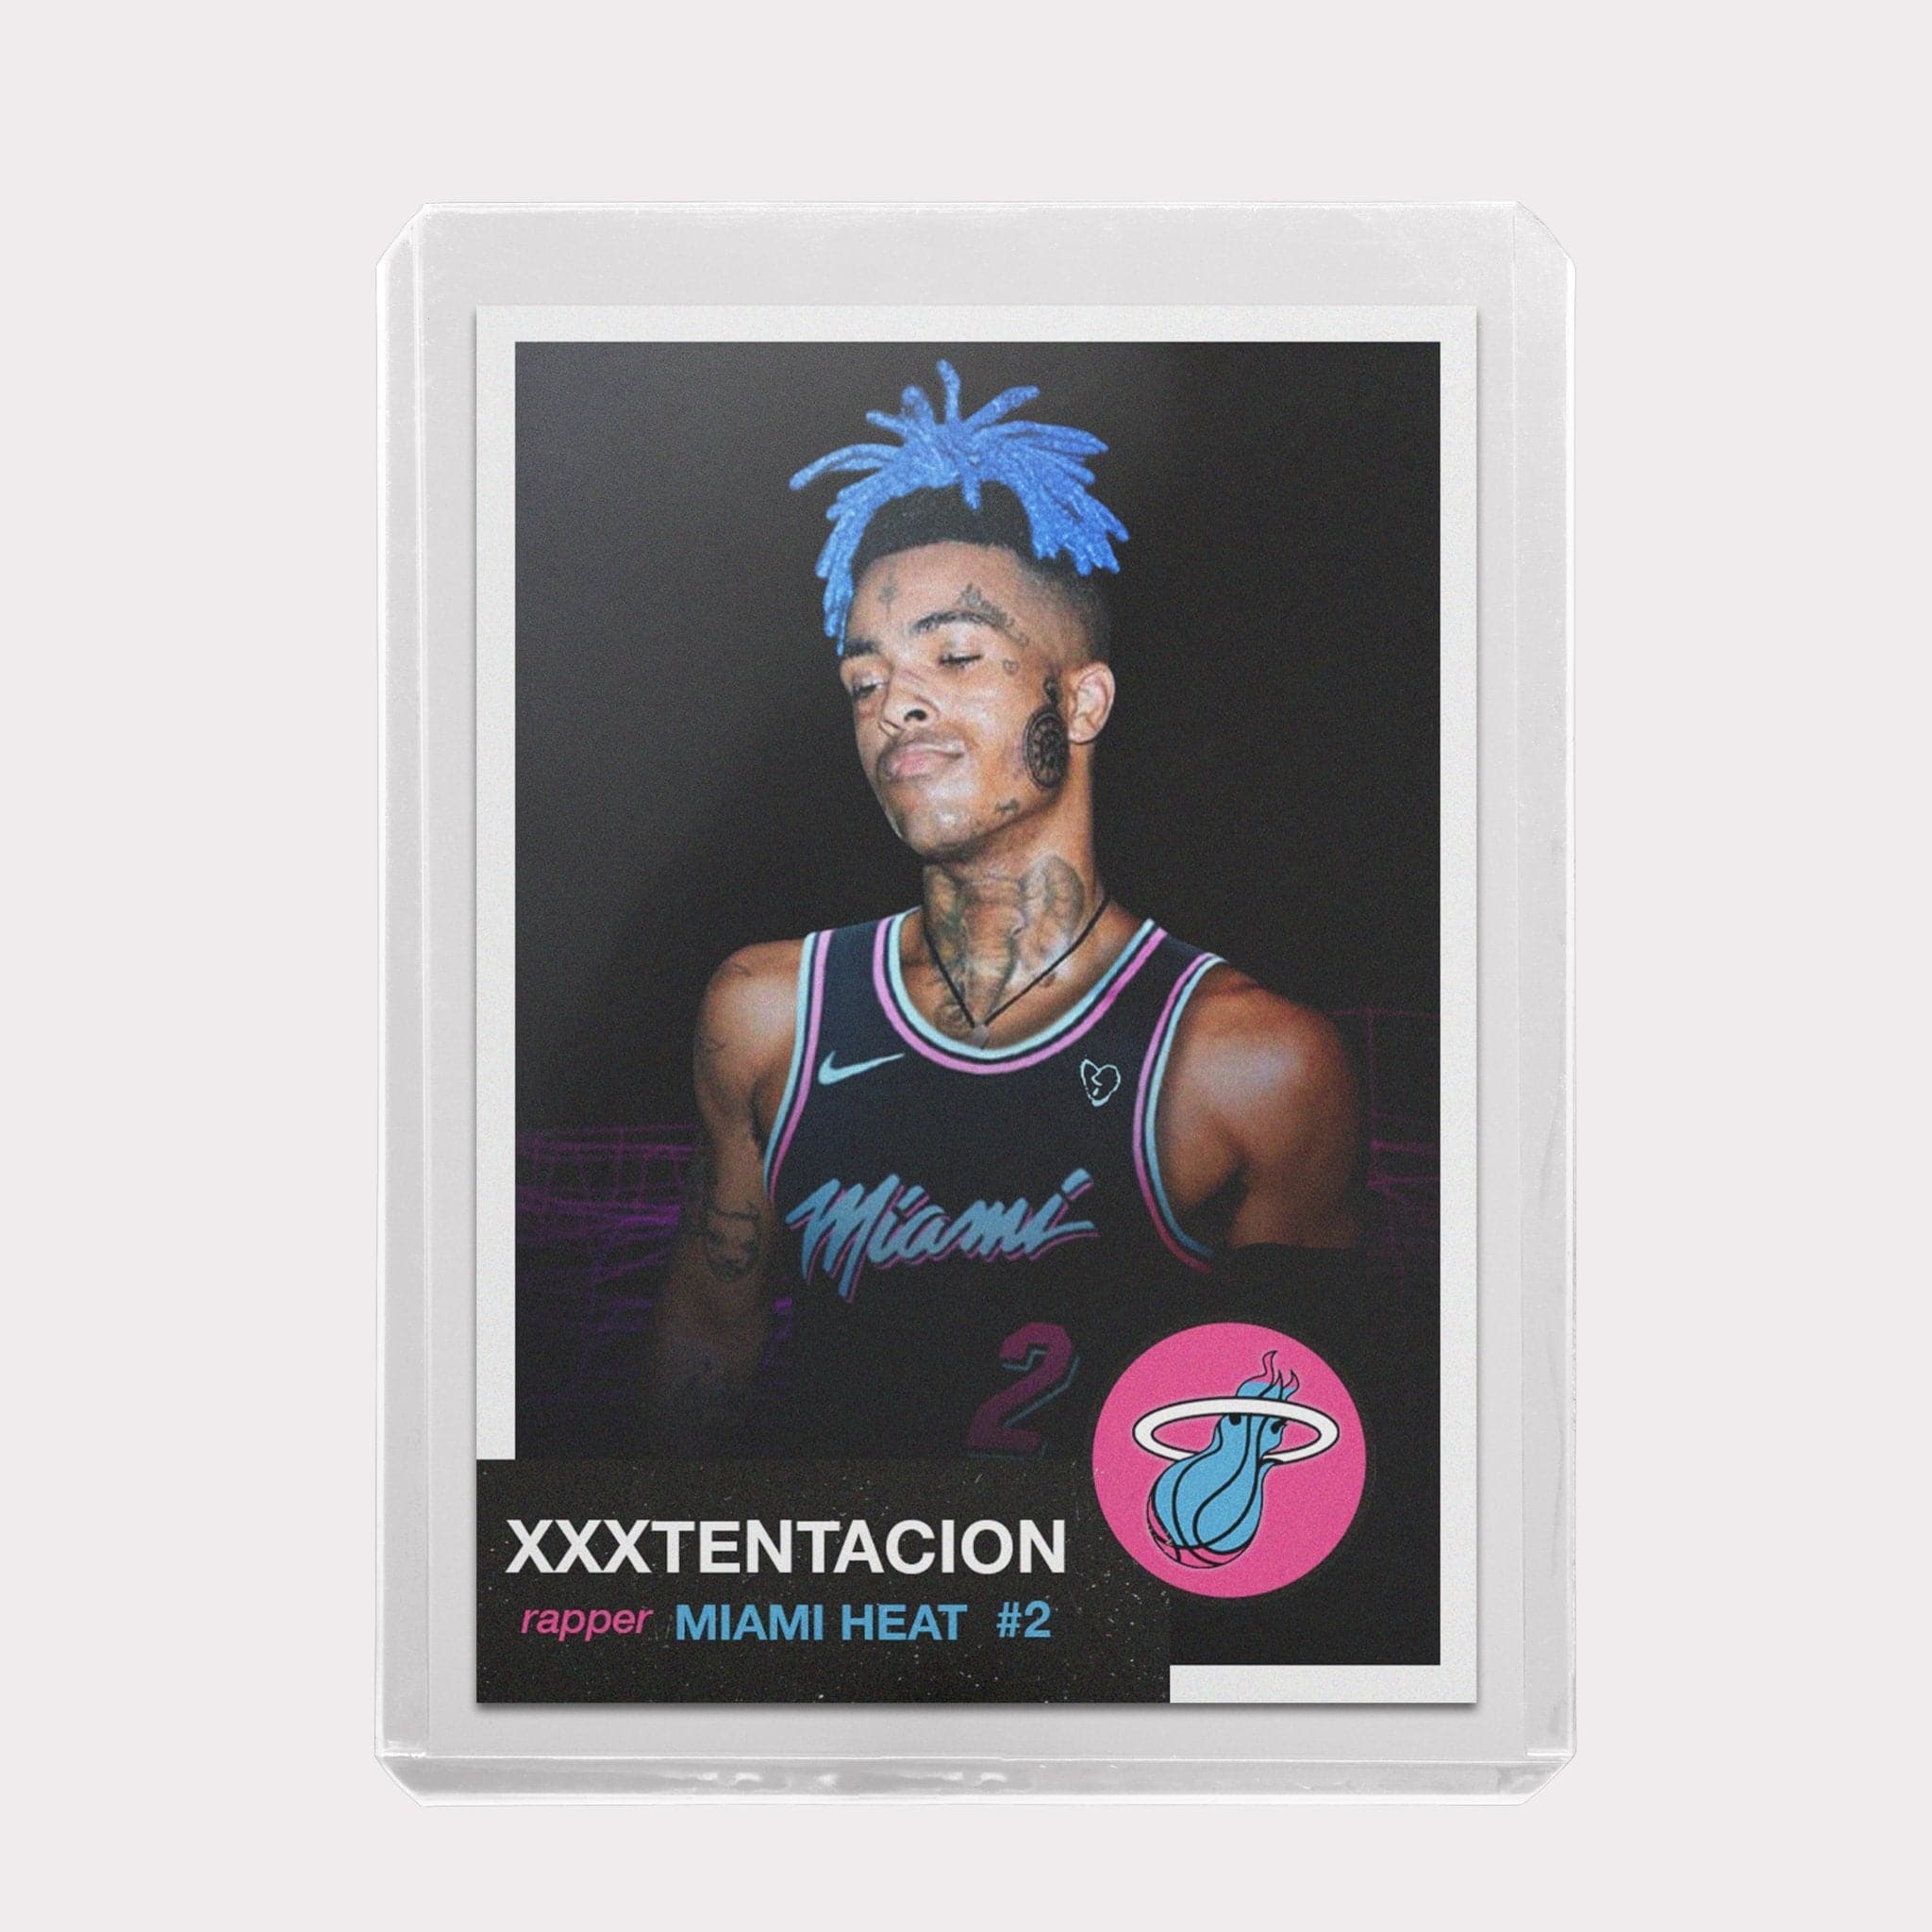 XXXTentacion Custom Basketball Card